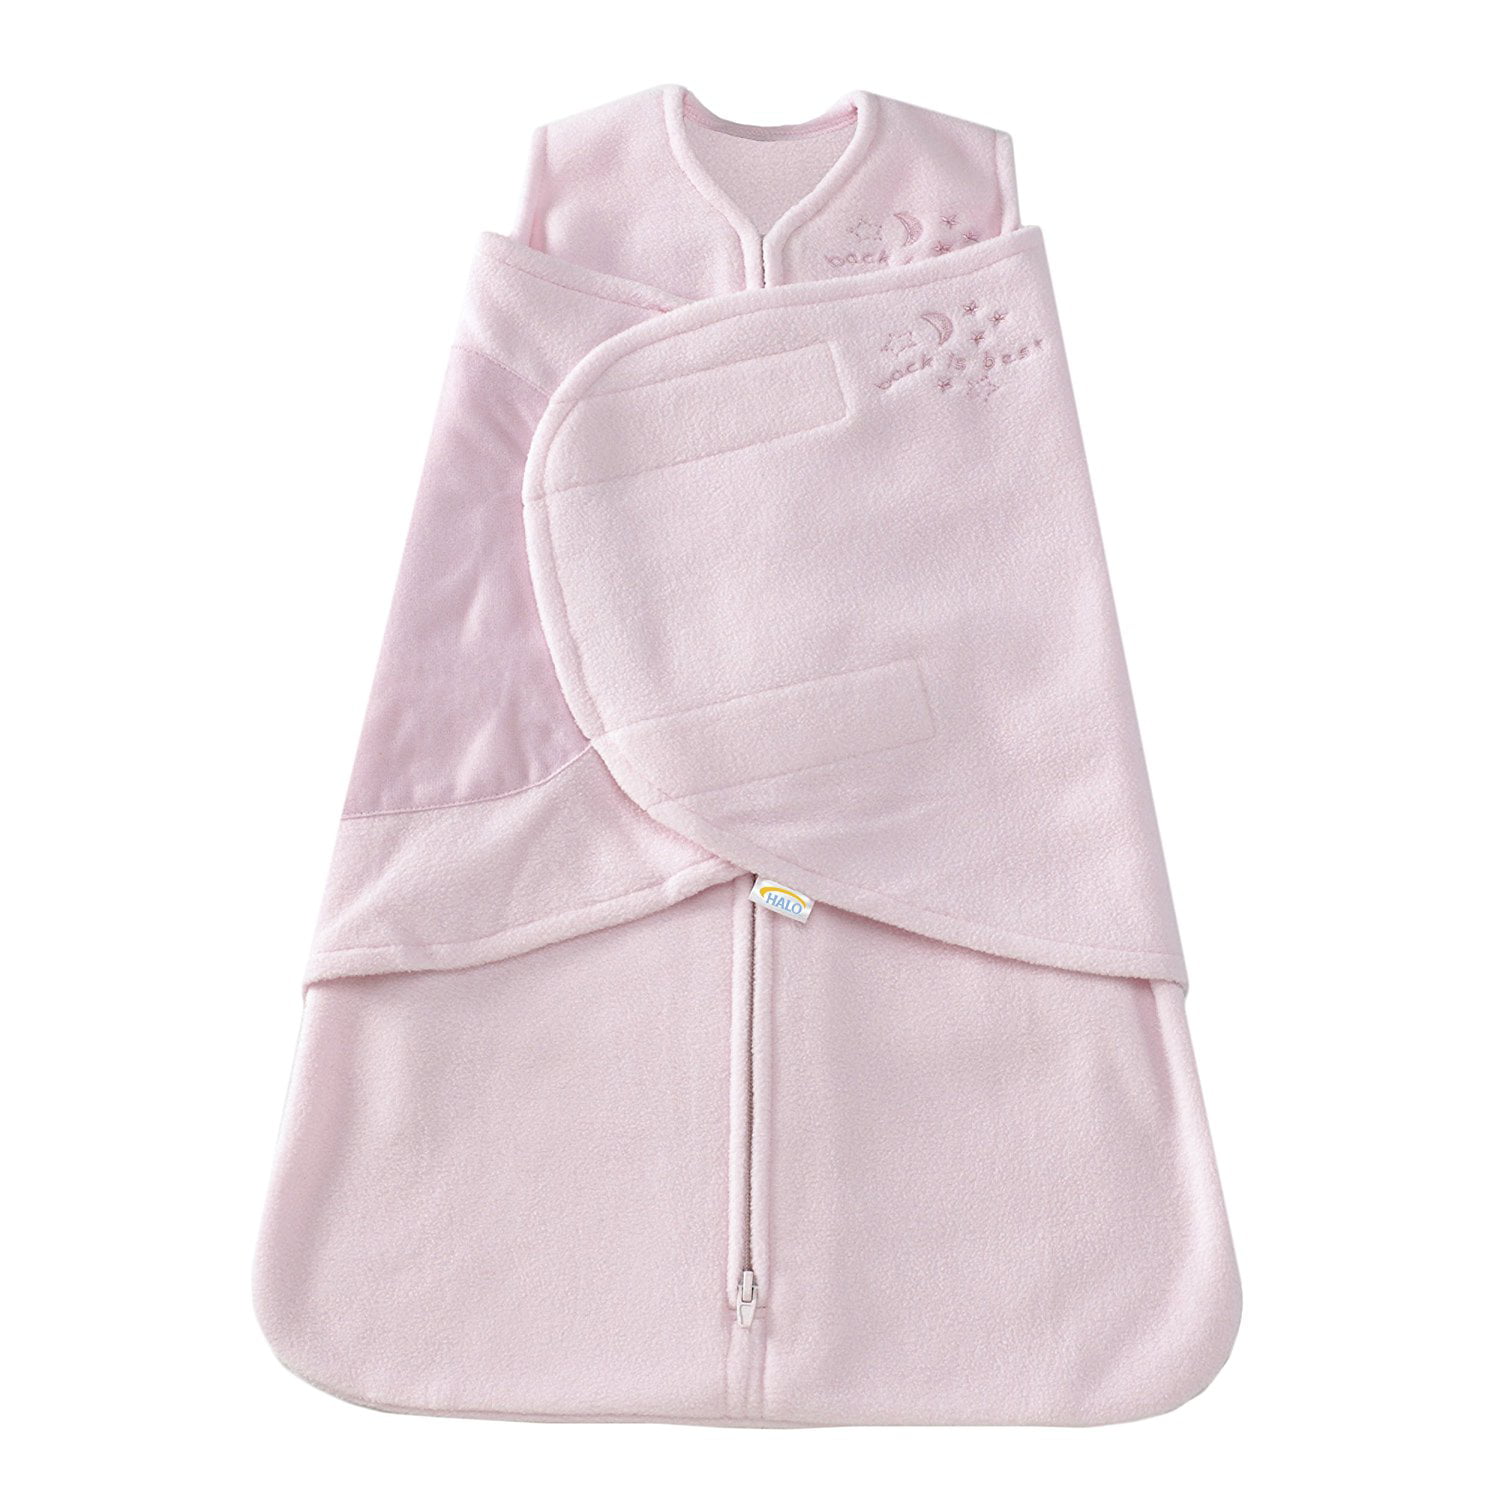 HALO SleepSack Micro-Fleece Swaddle Soft Pink Small